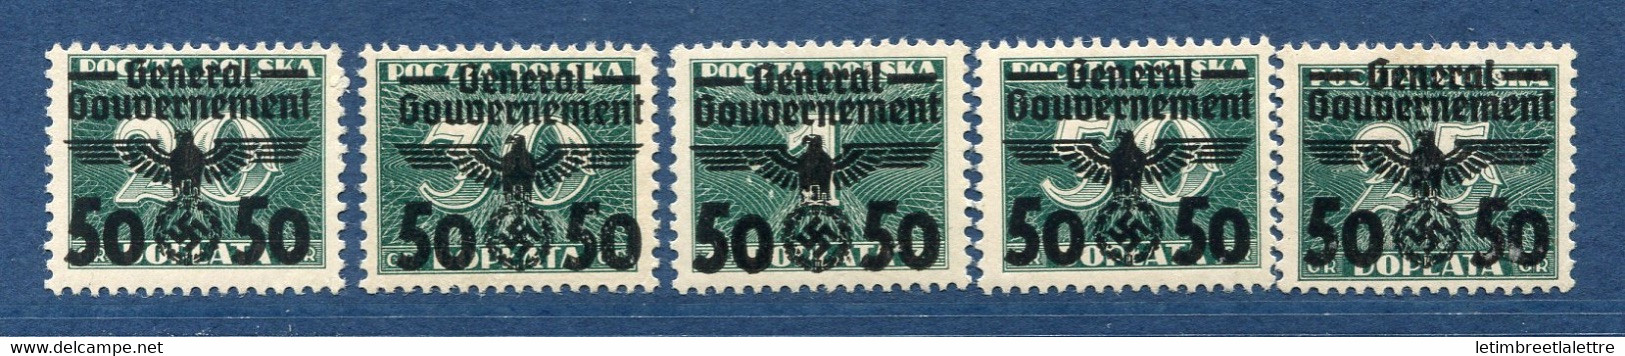 ⭐ Pologne - Gouvernement Général - YT N° 51 à 55 ** - Neuf Sans Charnière - 1940 ⭐ - Gobierno General